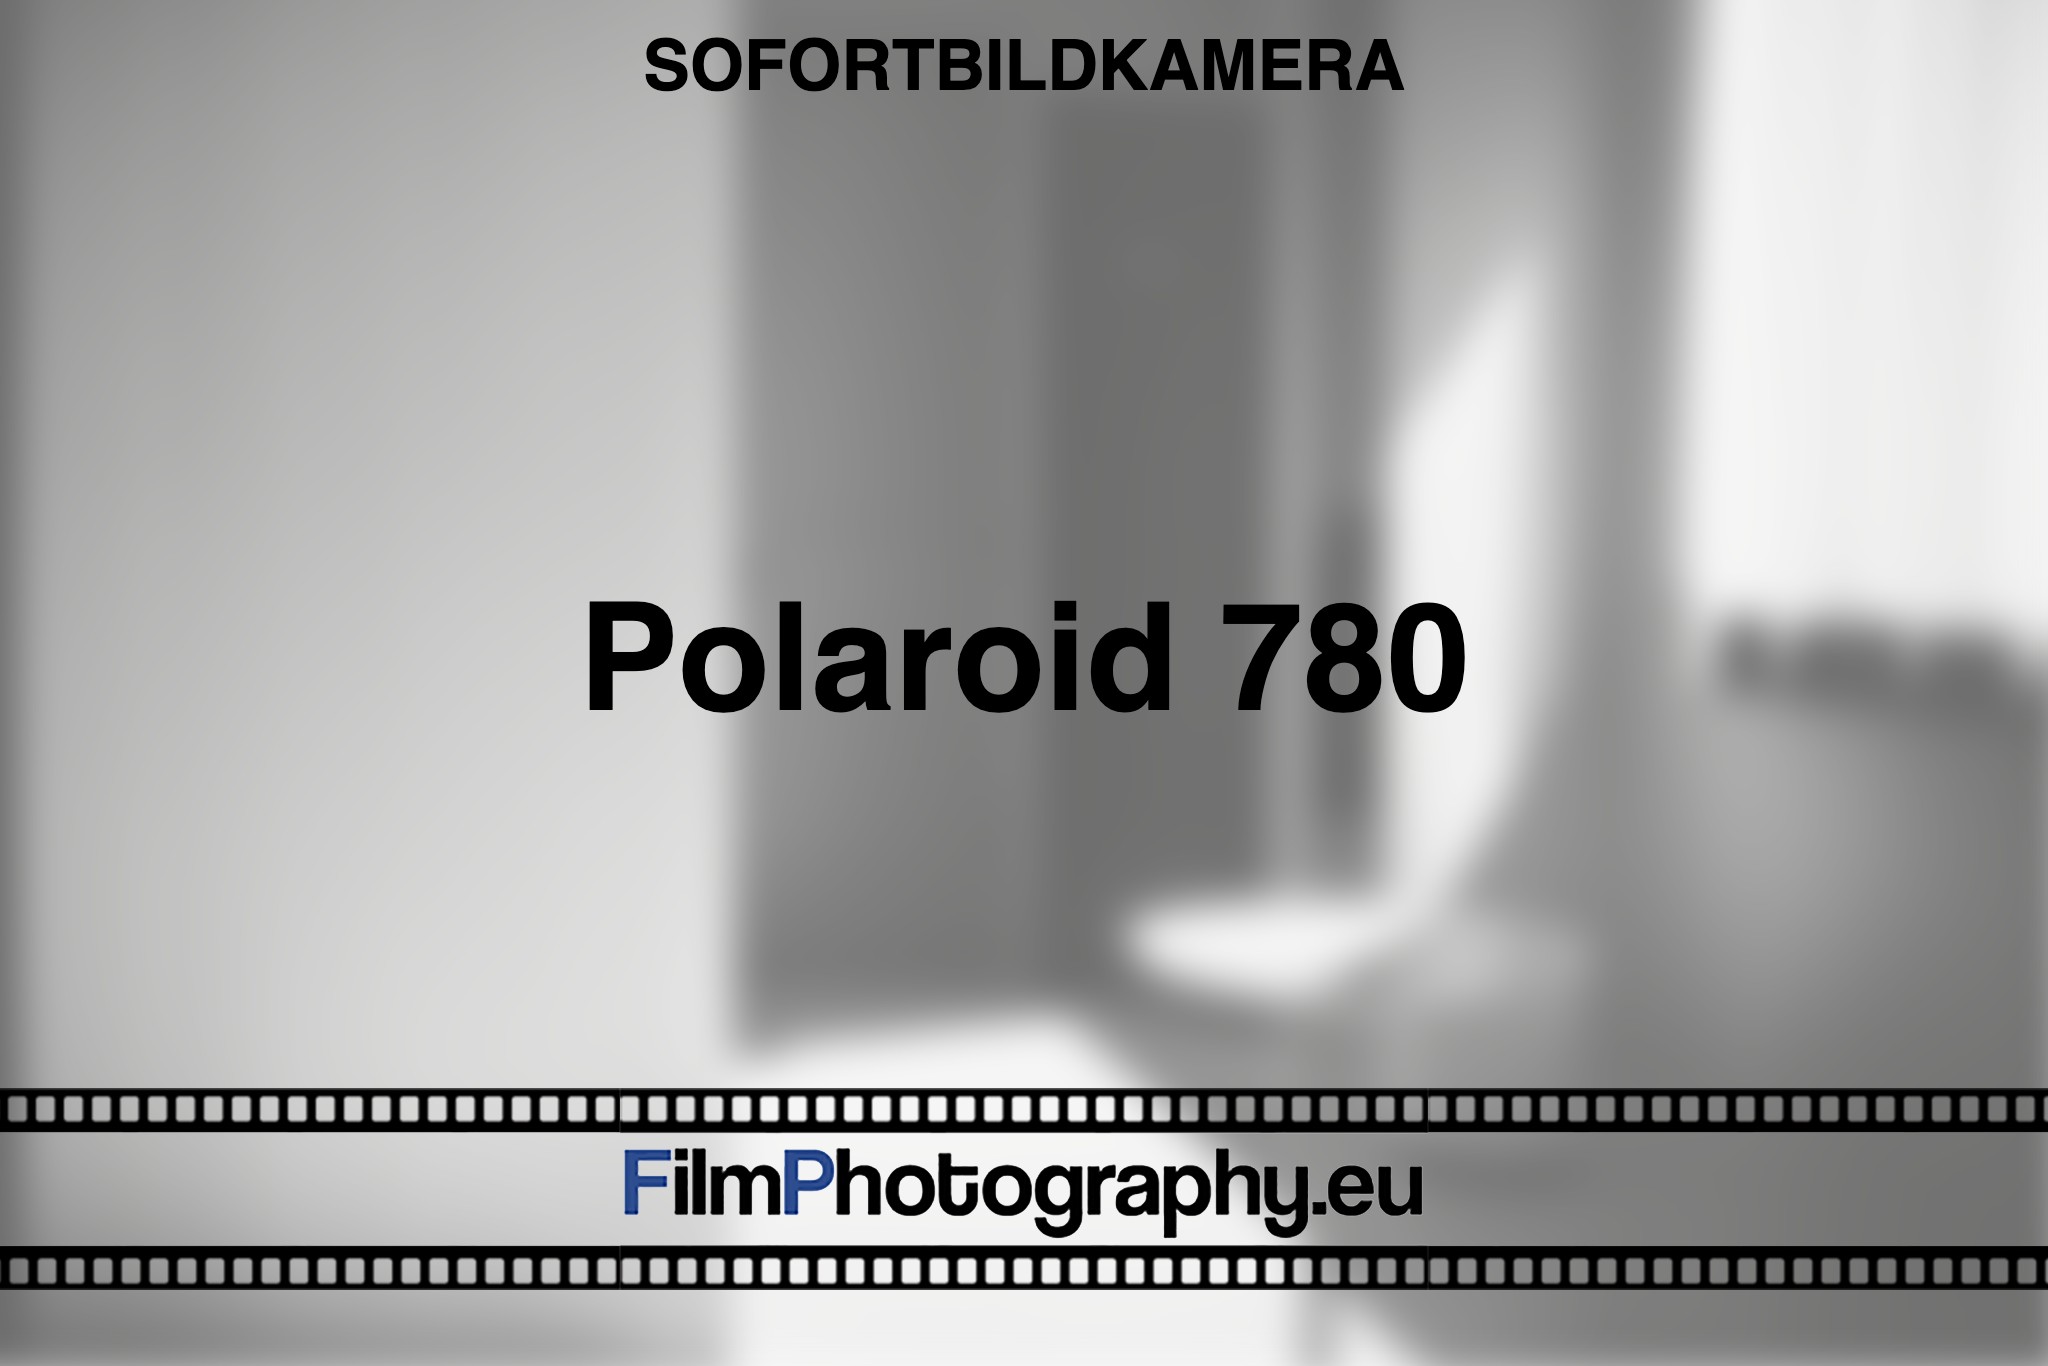 polaroid-780-sofortbildkamera-bnv